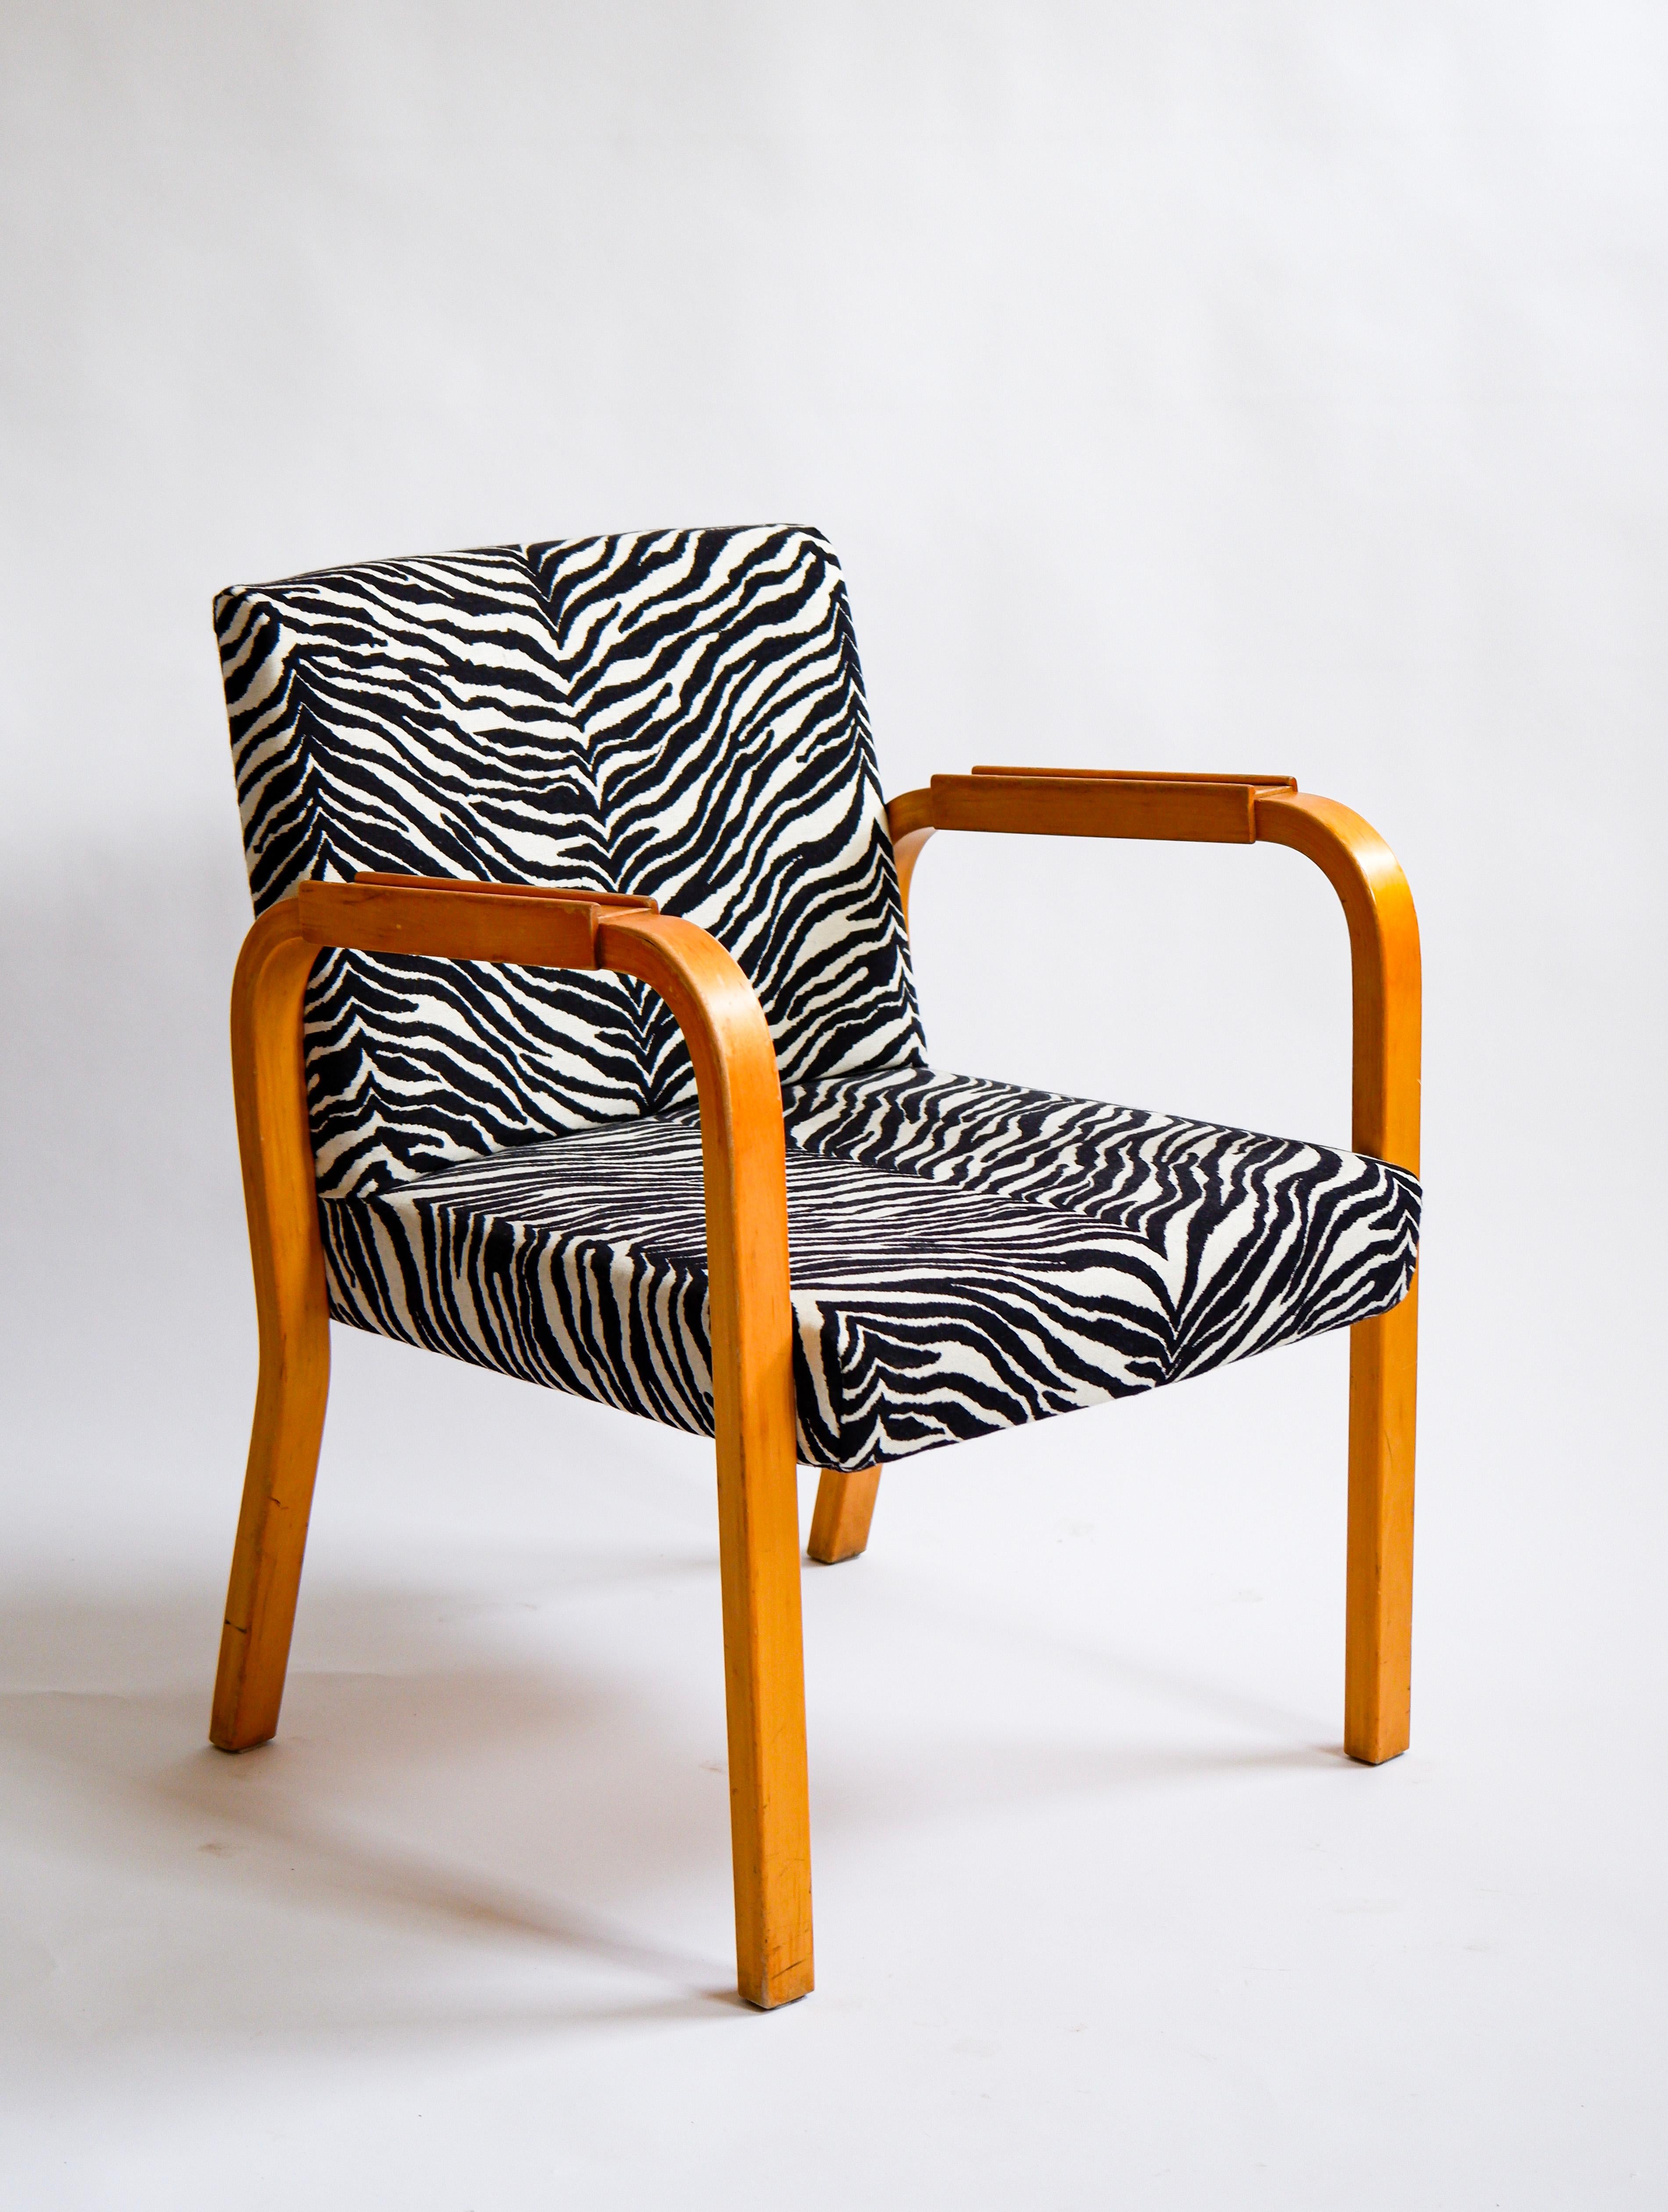 Rare variation du modèle 46 conçu par Alvar Aalto dans les années 40 et produit par Artek en Finlande à la même époque. Les chaises sont composées de deux accoudoirs extrêmement rares. Il a été entièrement retapissé avec le tissu original d'Artek.